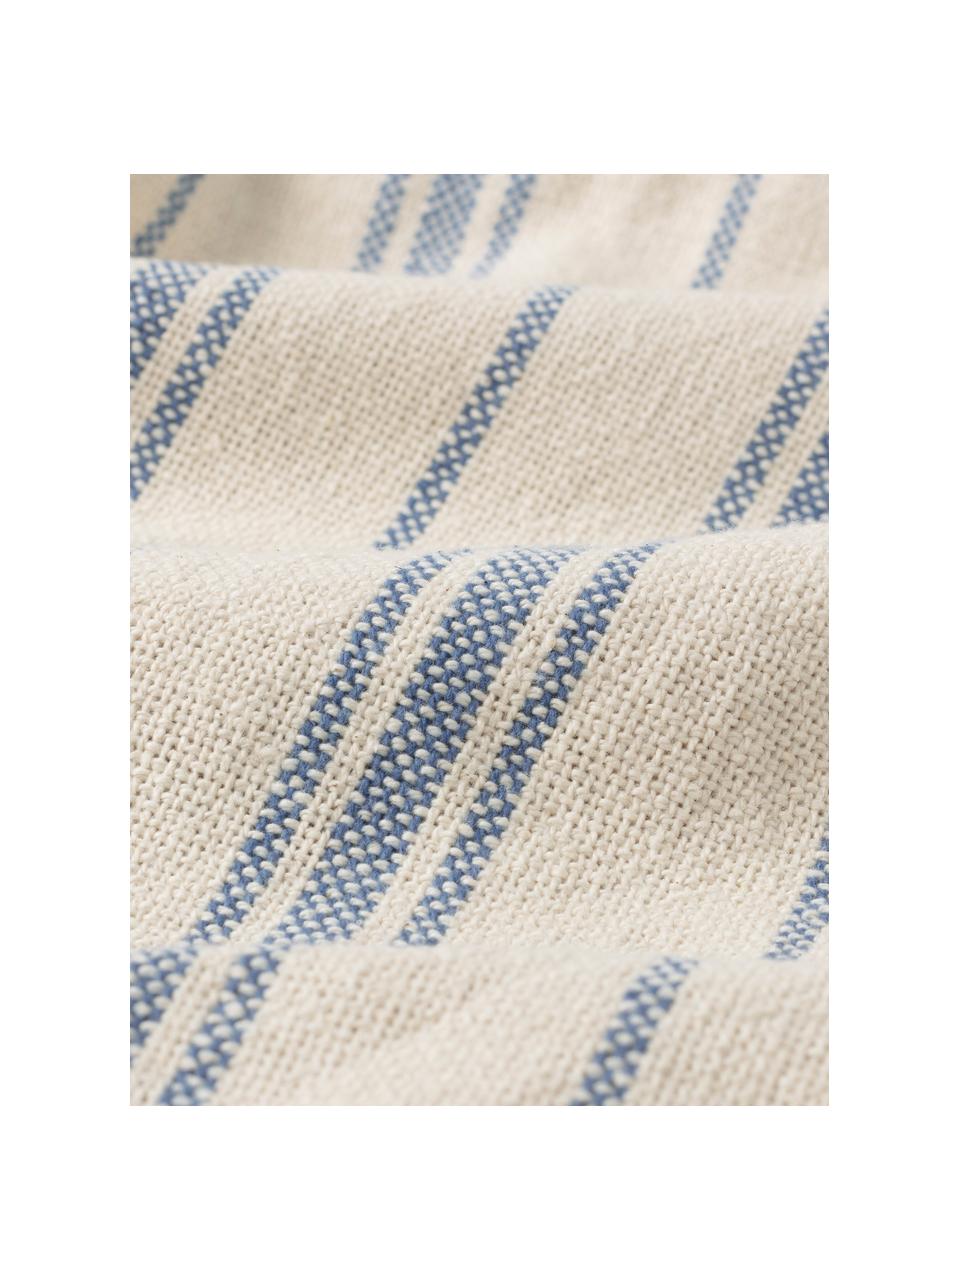 Copriletto in cotone a righe Capri, 100% cotone, Color crema, blu, Larg. 180 x Lung. 260 cm  (per letti da 140 x 200 cm)